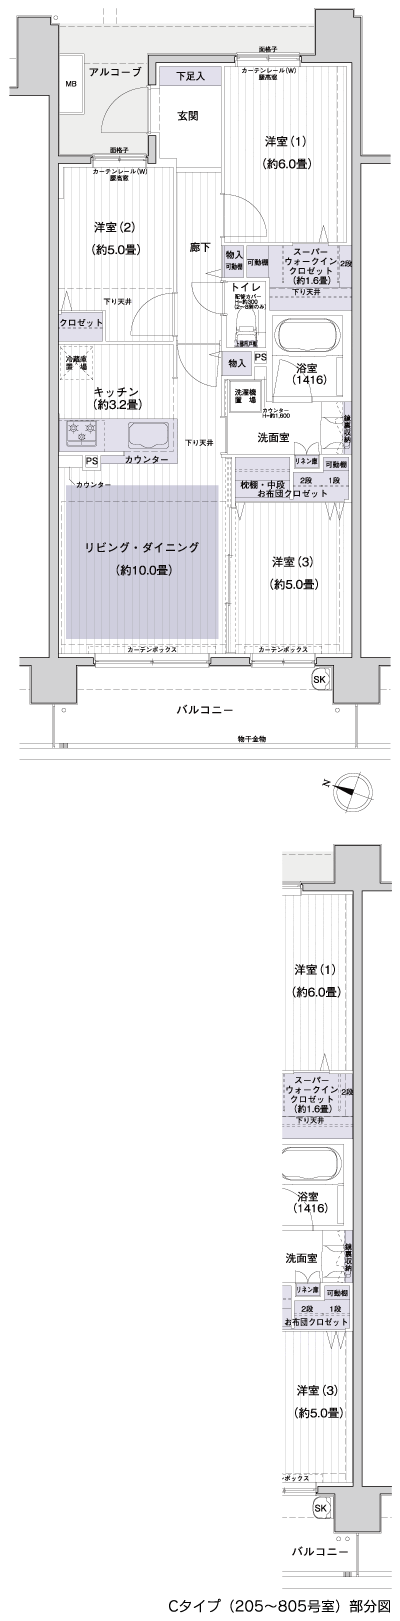 Floor: 3LDK + SWIC, the area occupied: 67.8 sq m, Price: 34,280,000 yen, now on sale